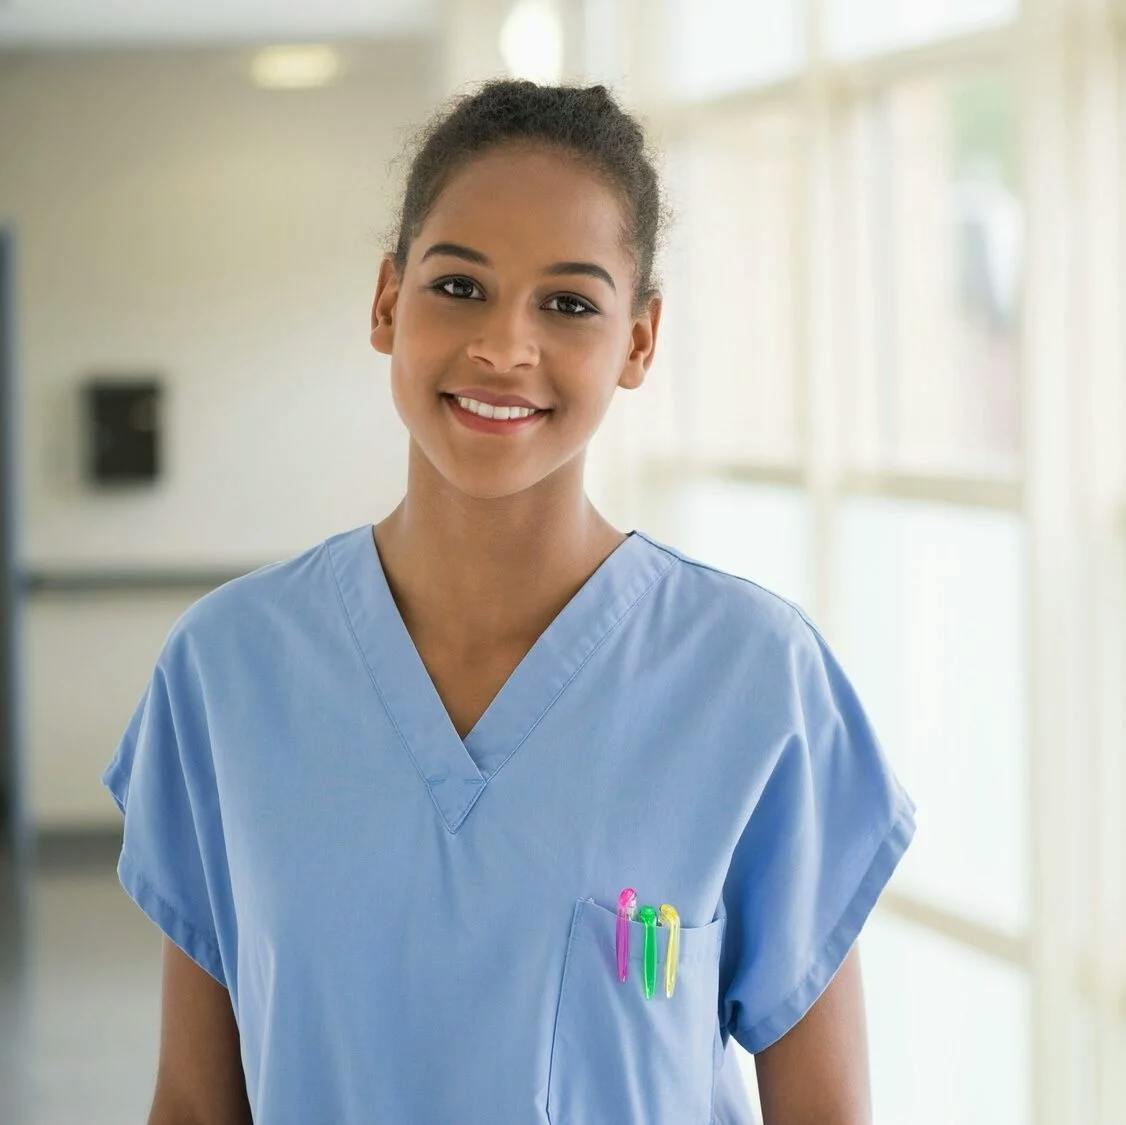 Portrait of a female nurse smiling